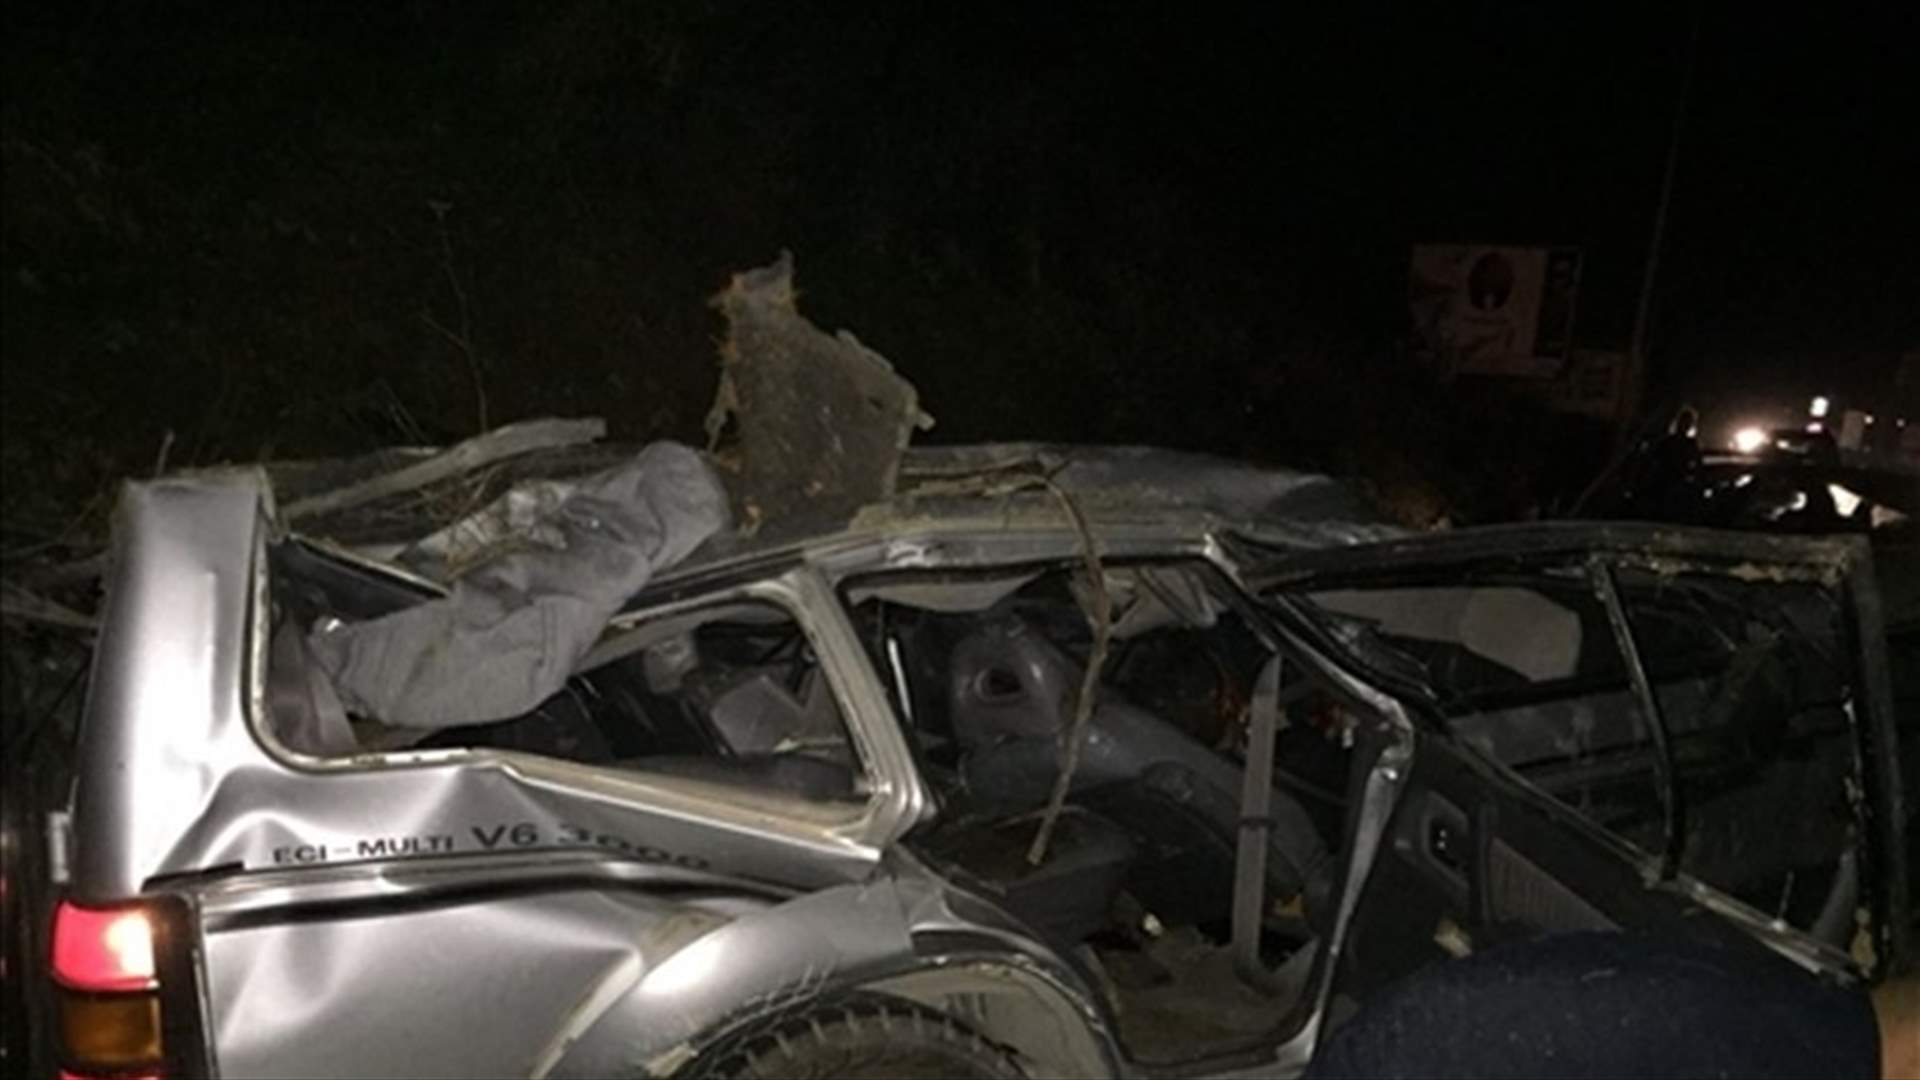 بالصور - قتيل و4 جرحى إثر حادث سير مروع على اوتوستراد الزهراني